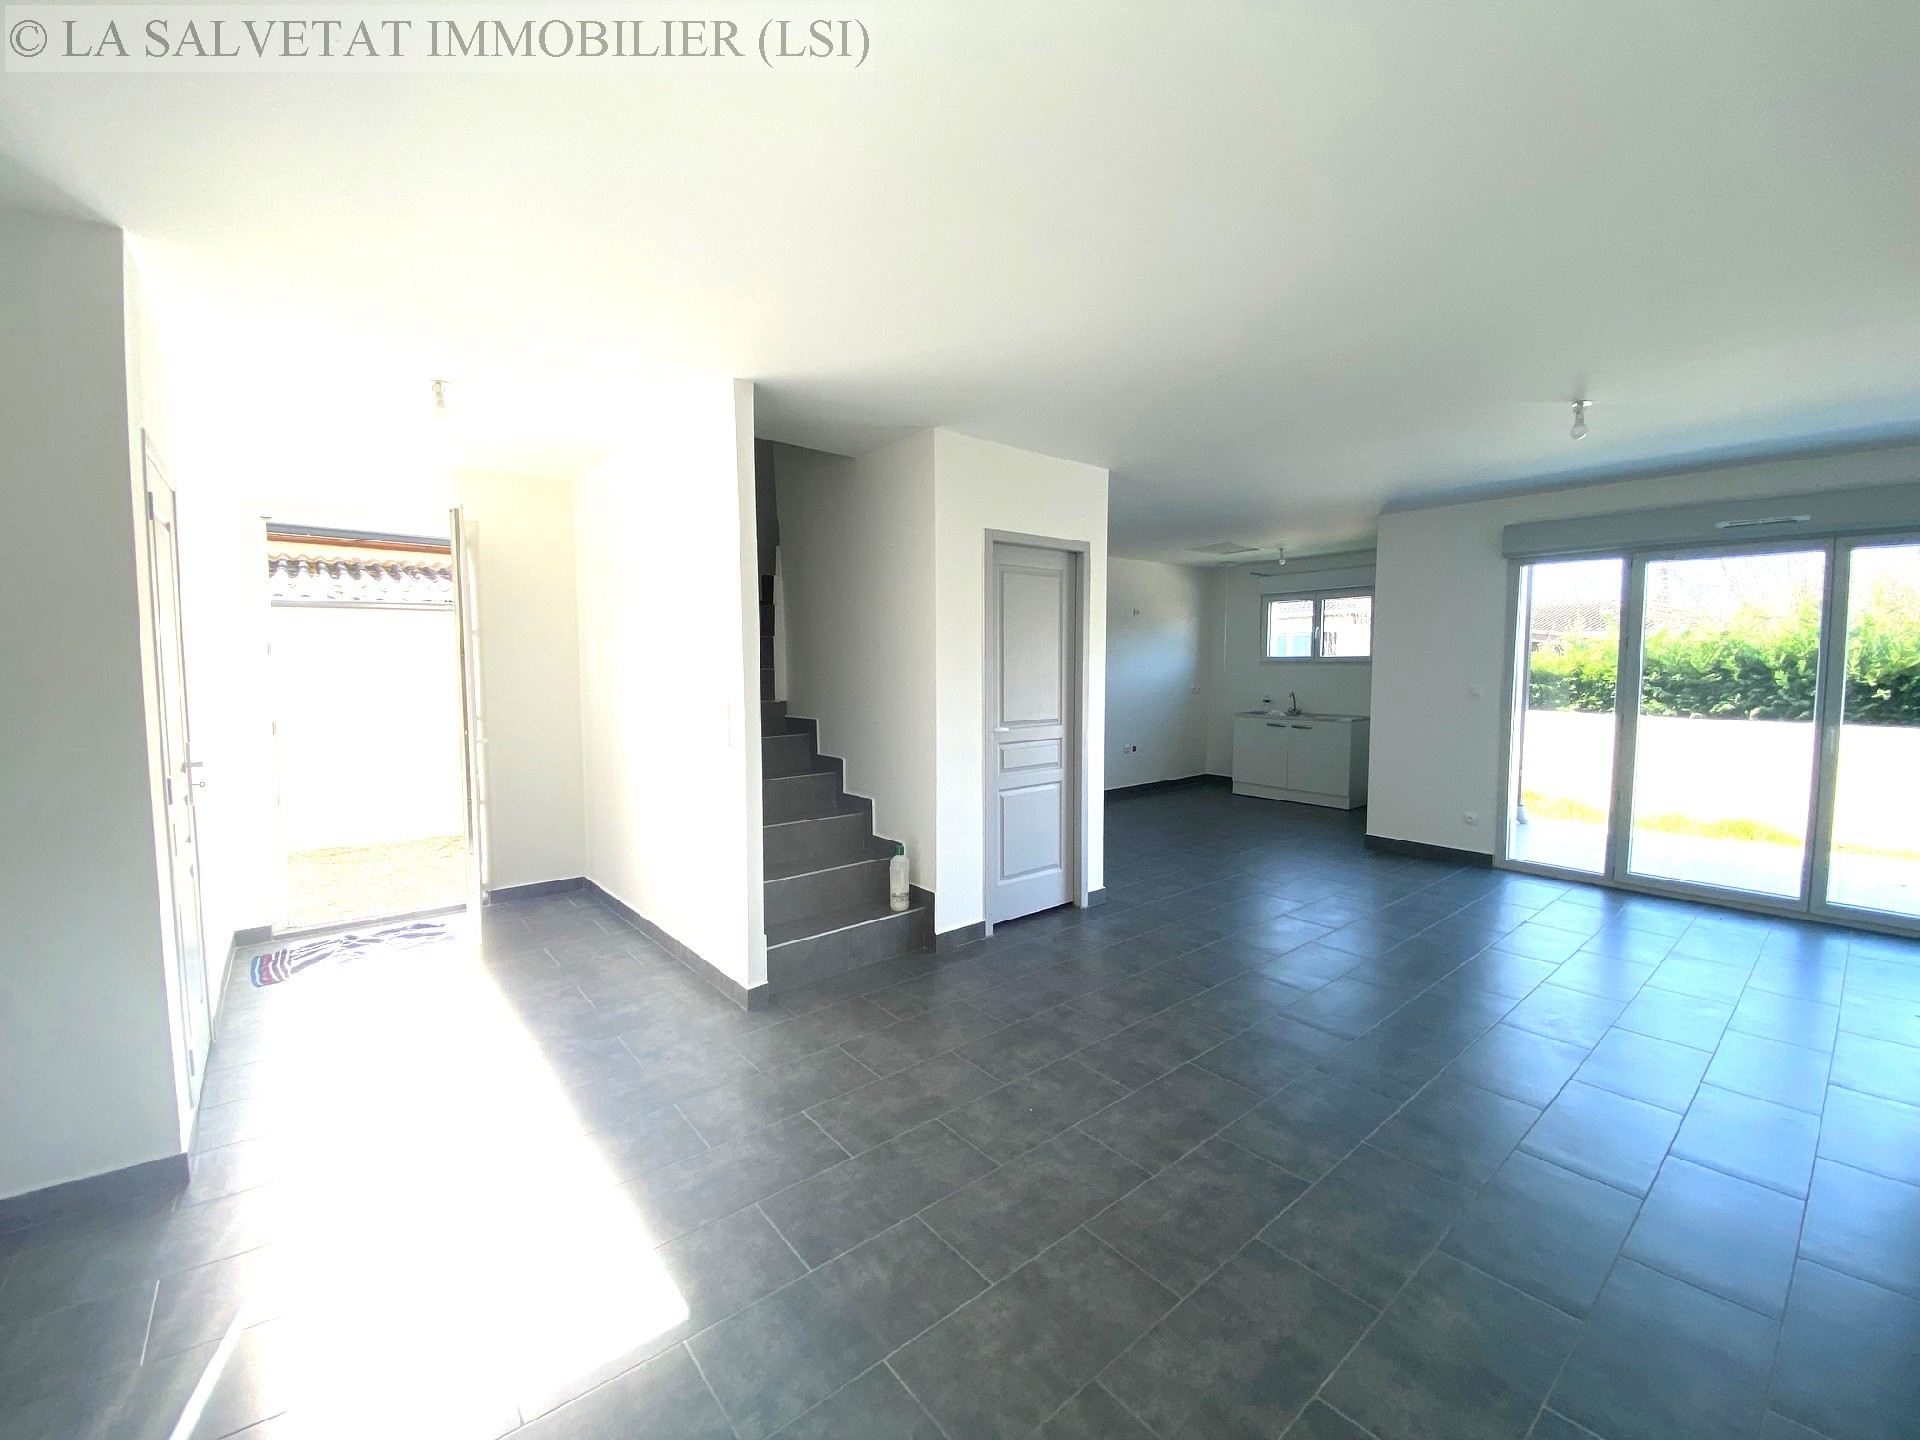 Vente maison-villa - ST LYS<br>114 m², 5 pièces